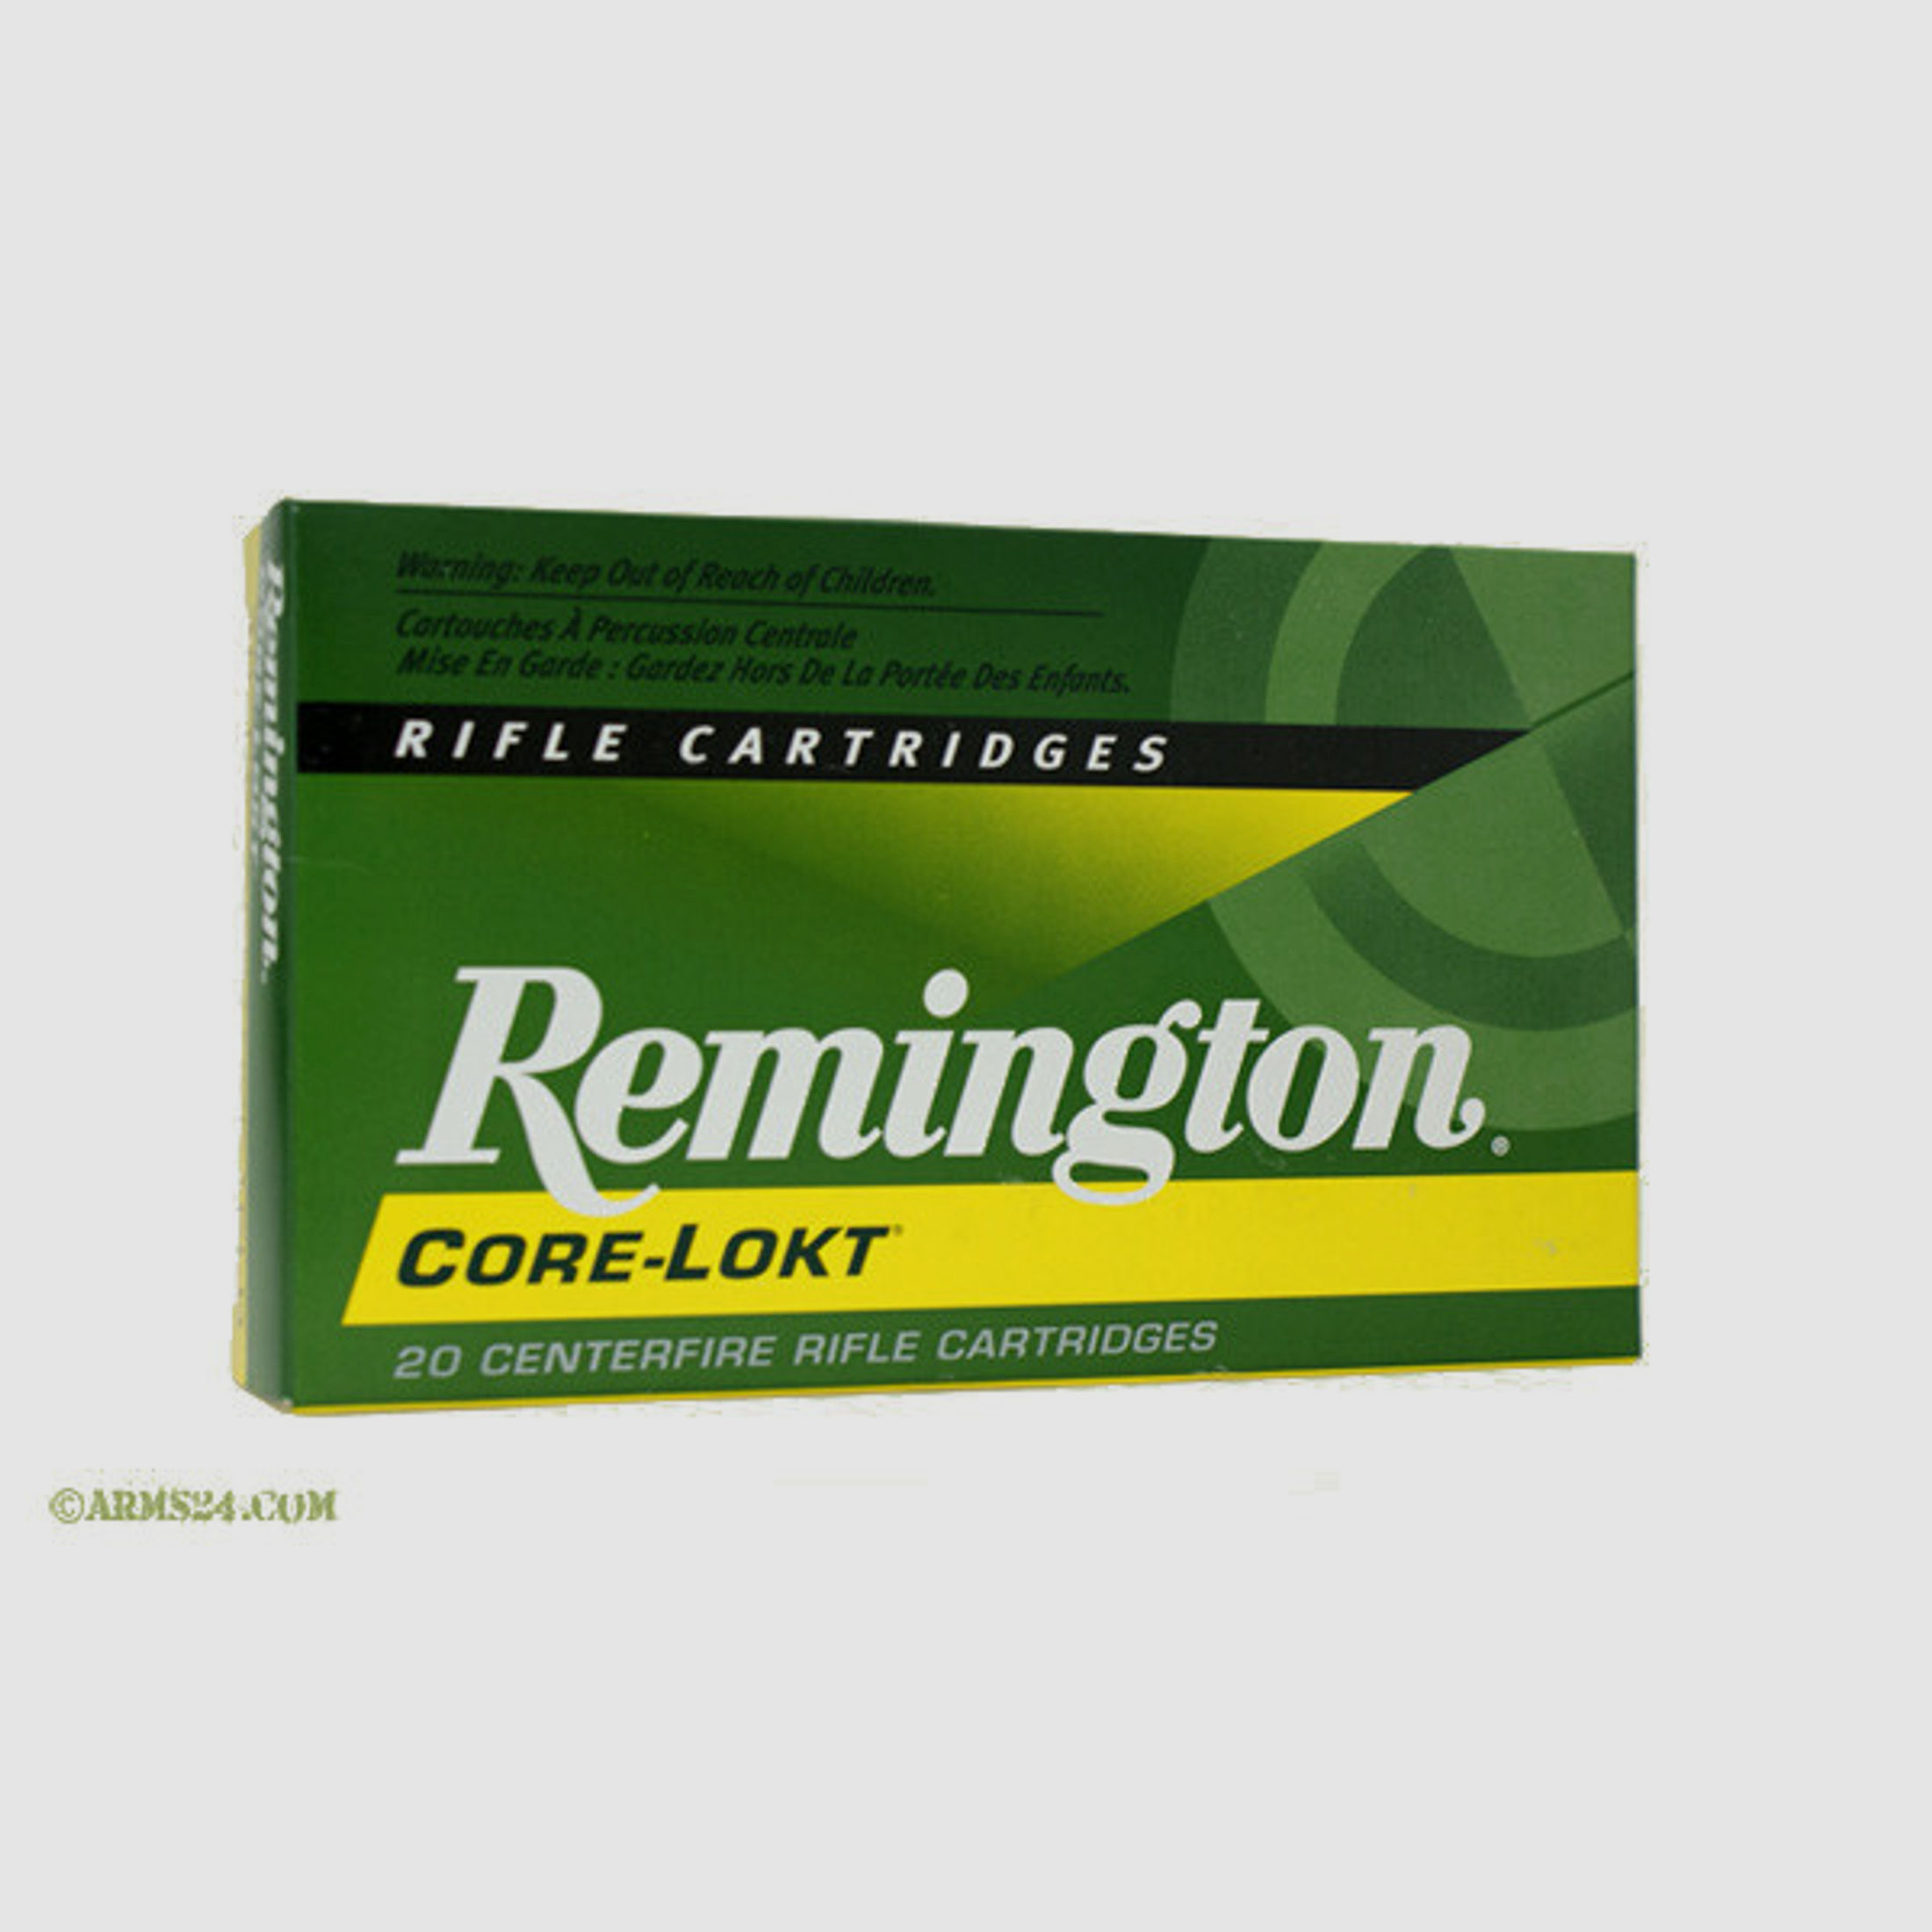 Remington .308 Win 11,66g - 180grs Remington Core-Lokt SP Büchsenmunition